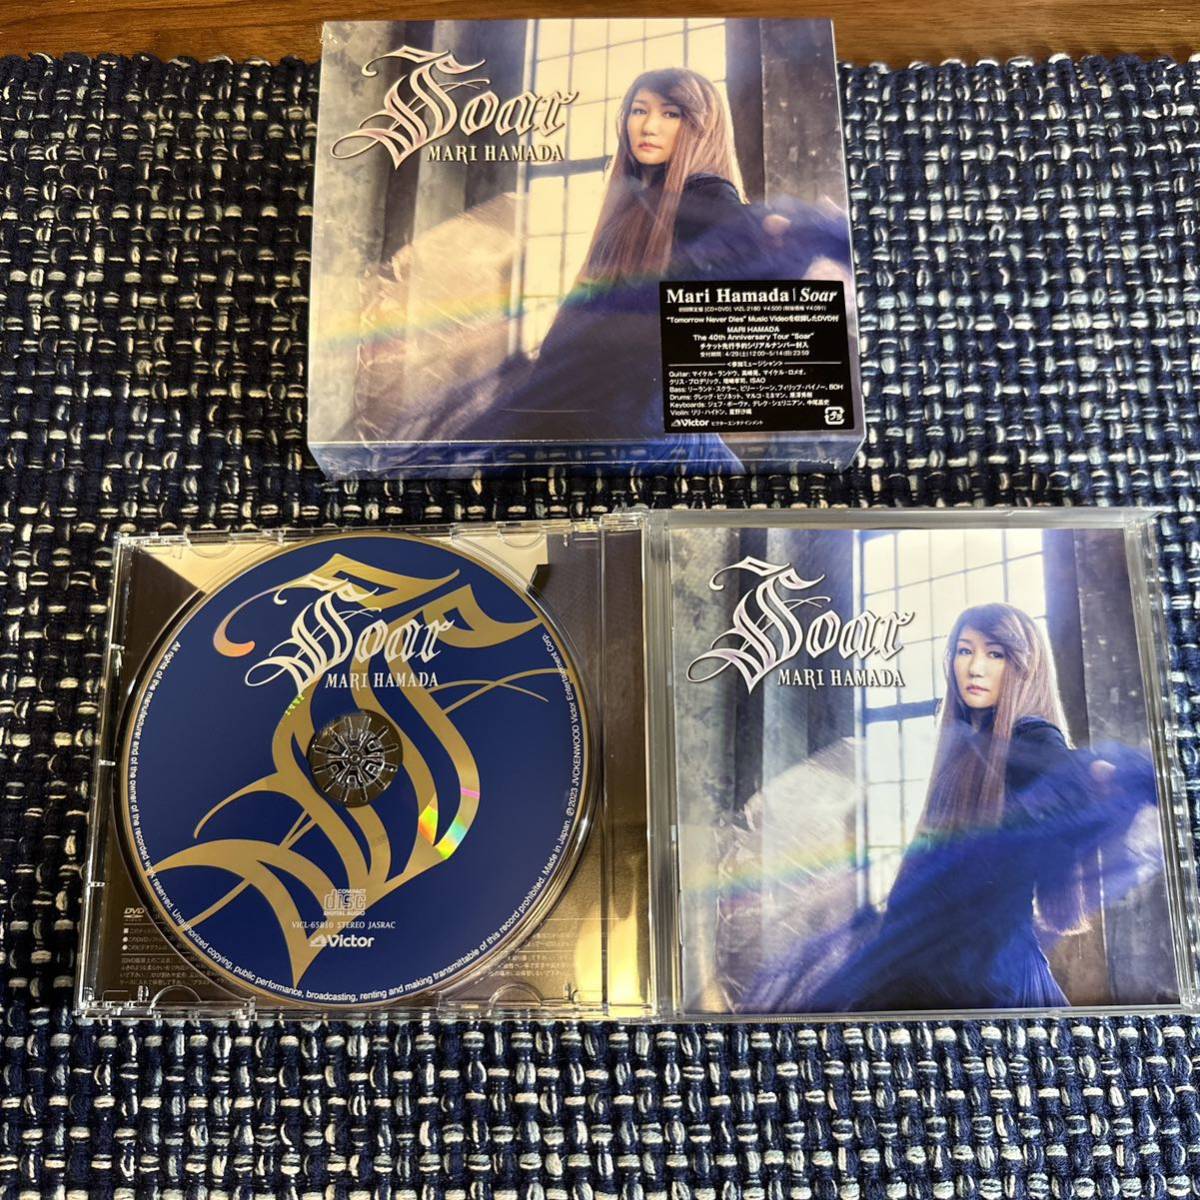 【特典あり】浜田麻里 初回限定盤 CD+DVD 「Soar」 Mari Hamada_画像3